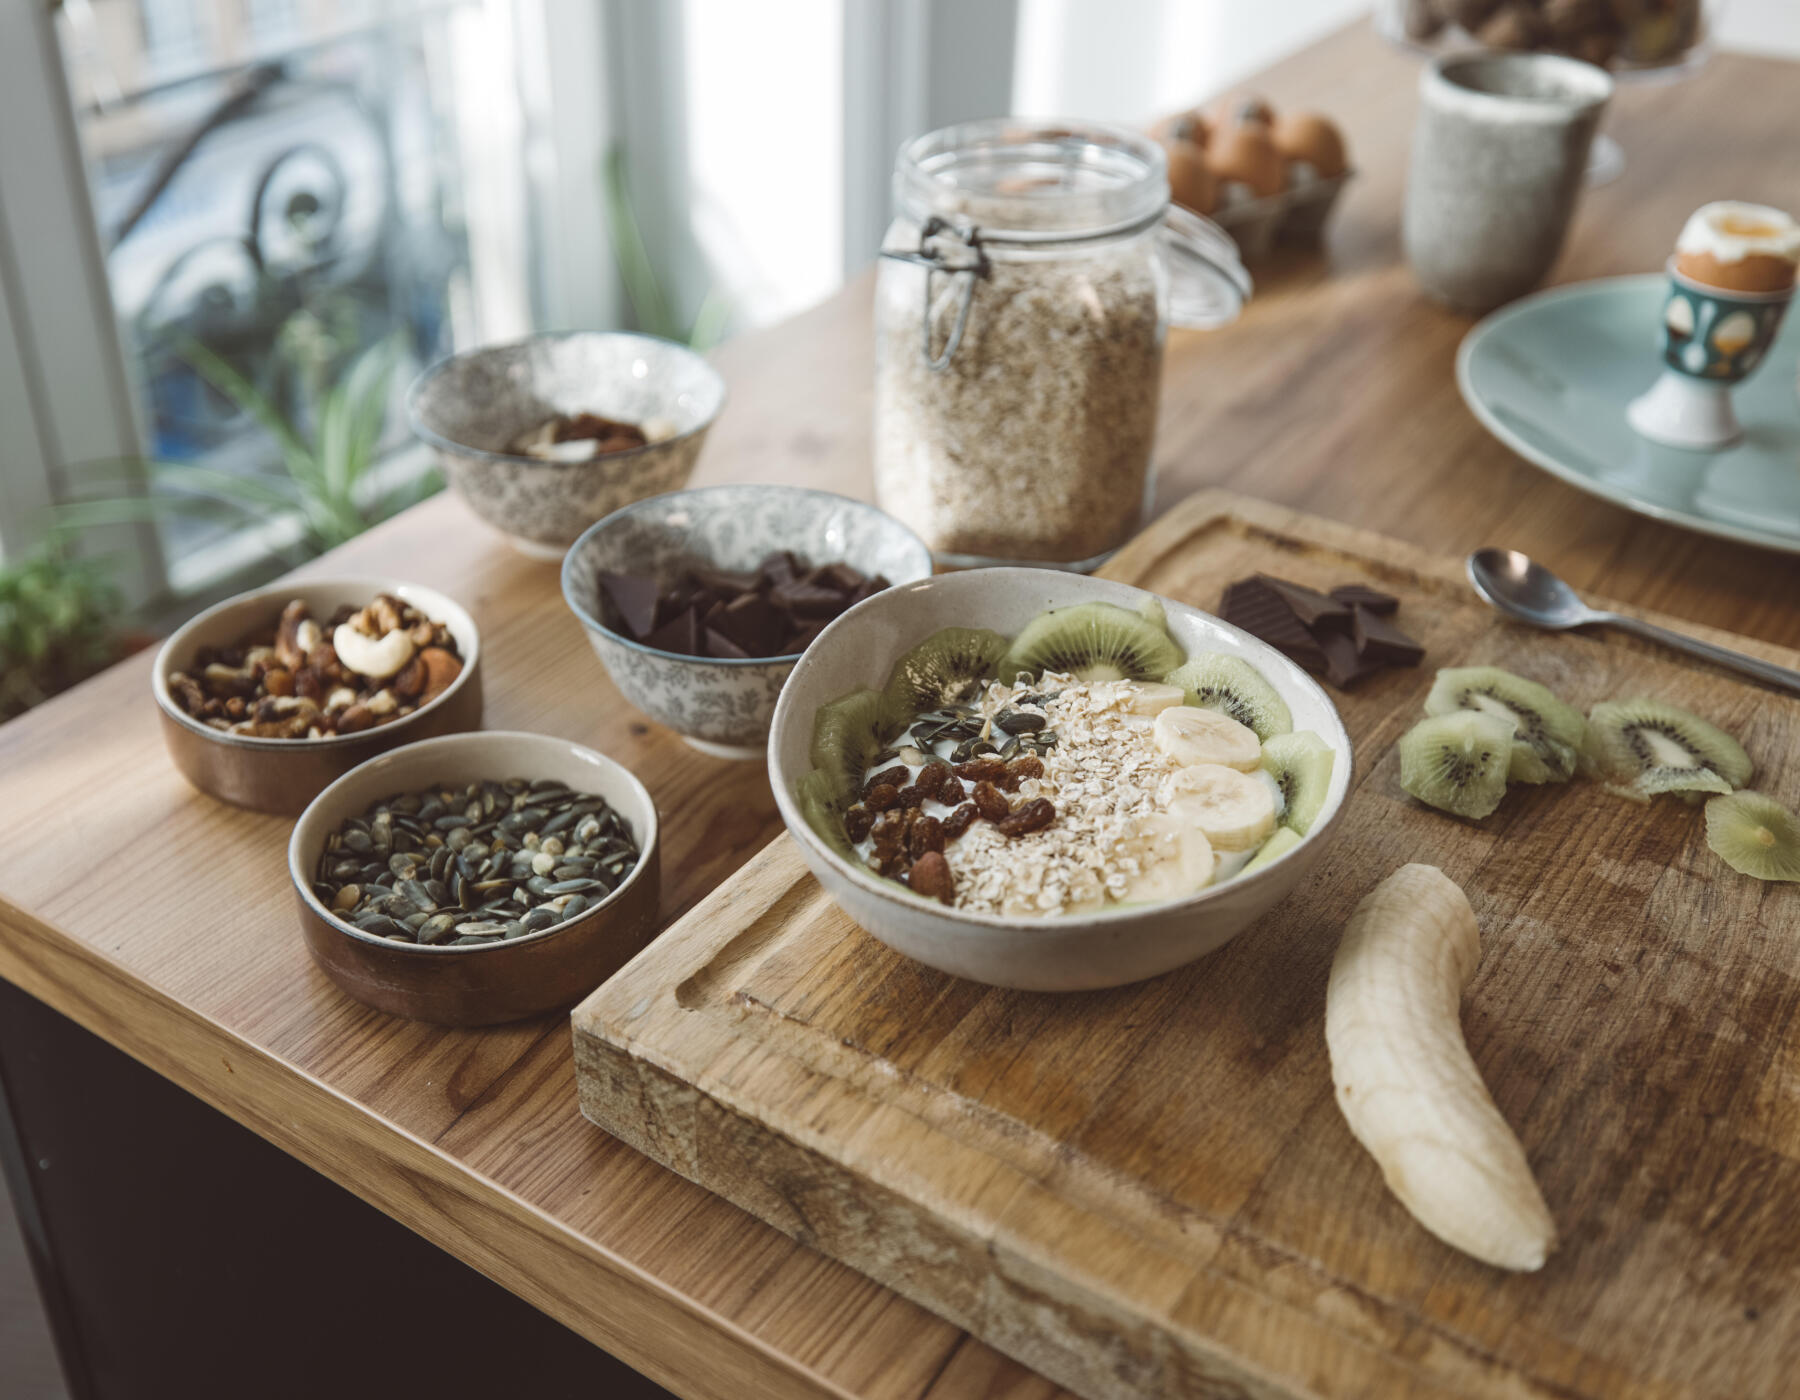 Ingrédients disposés sur une table pour composer un repas équilibré et sportif